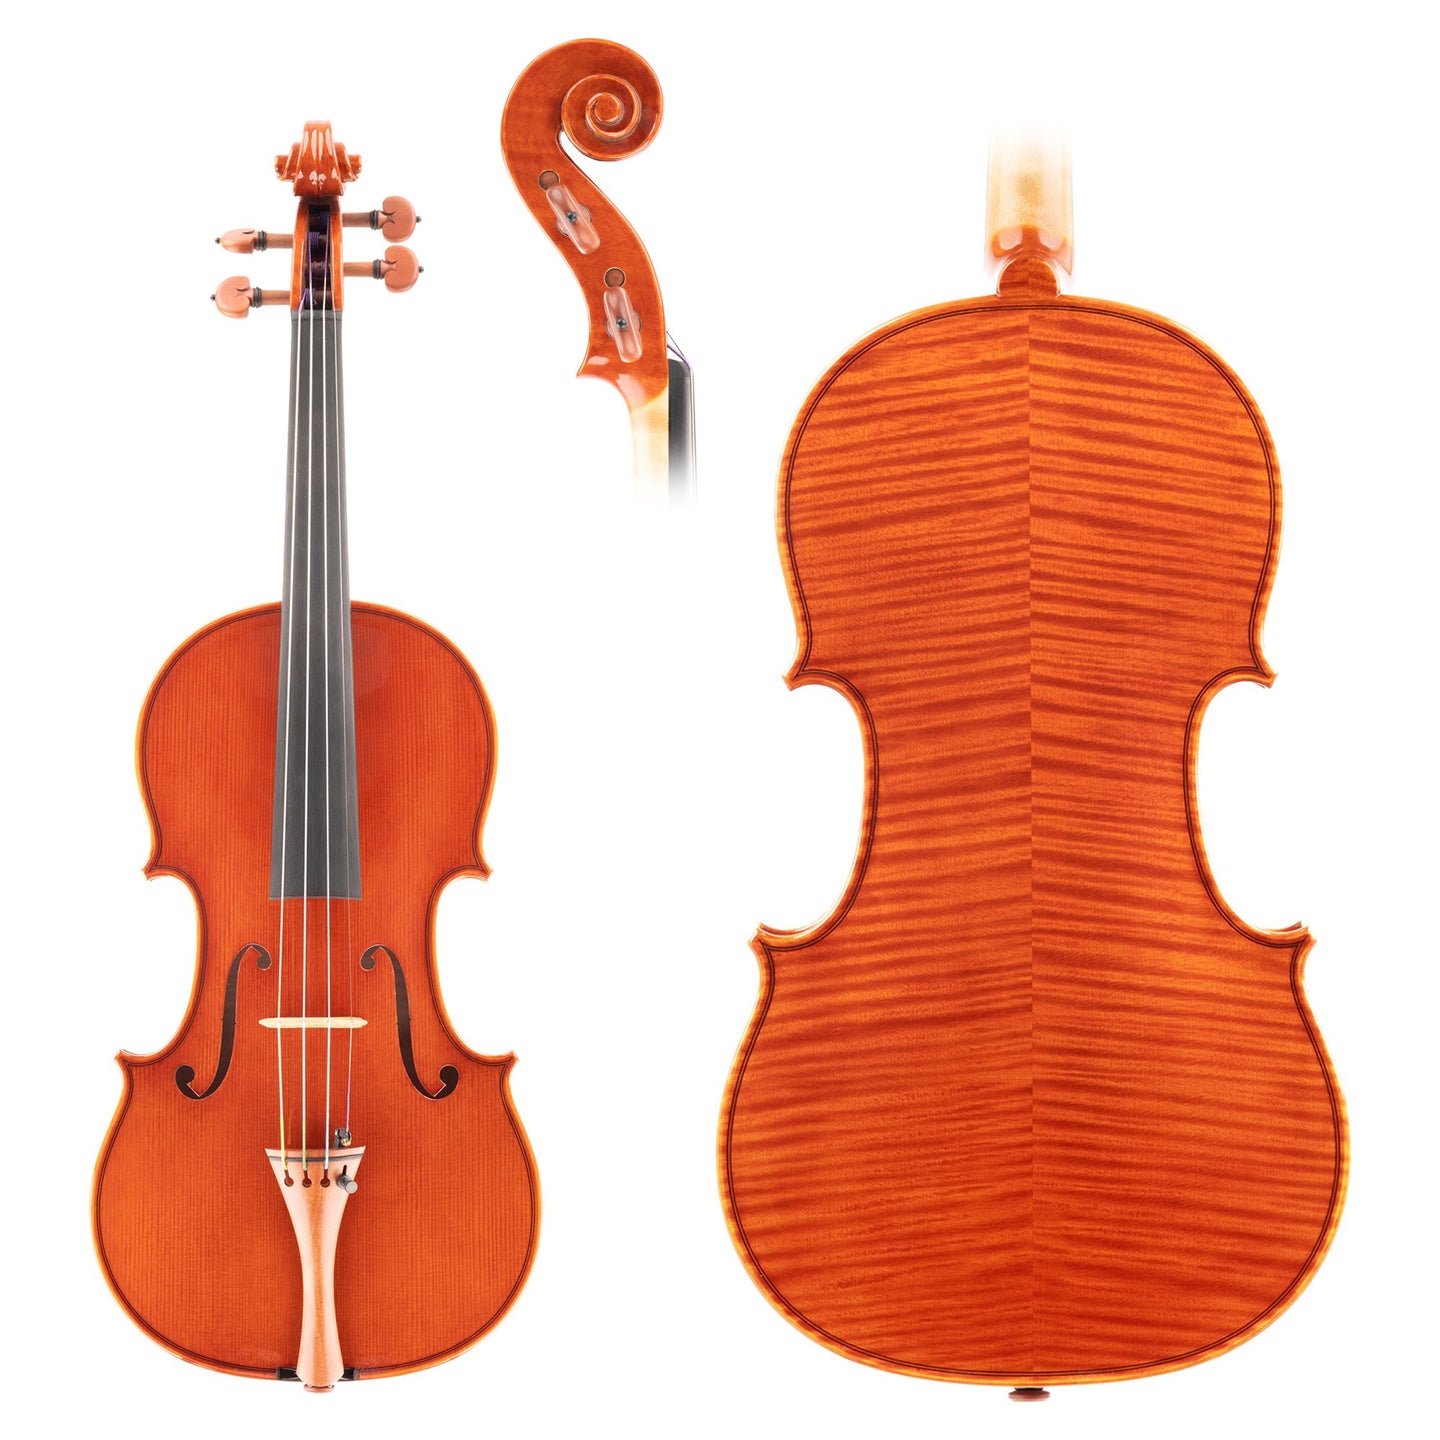 PALMARIO Maestro 500 Violin